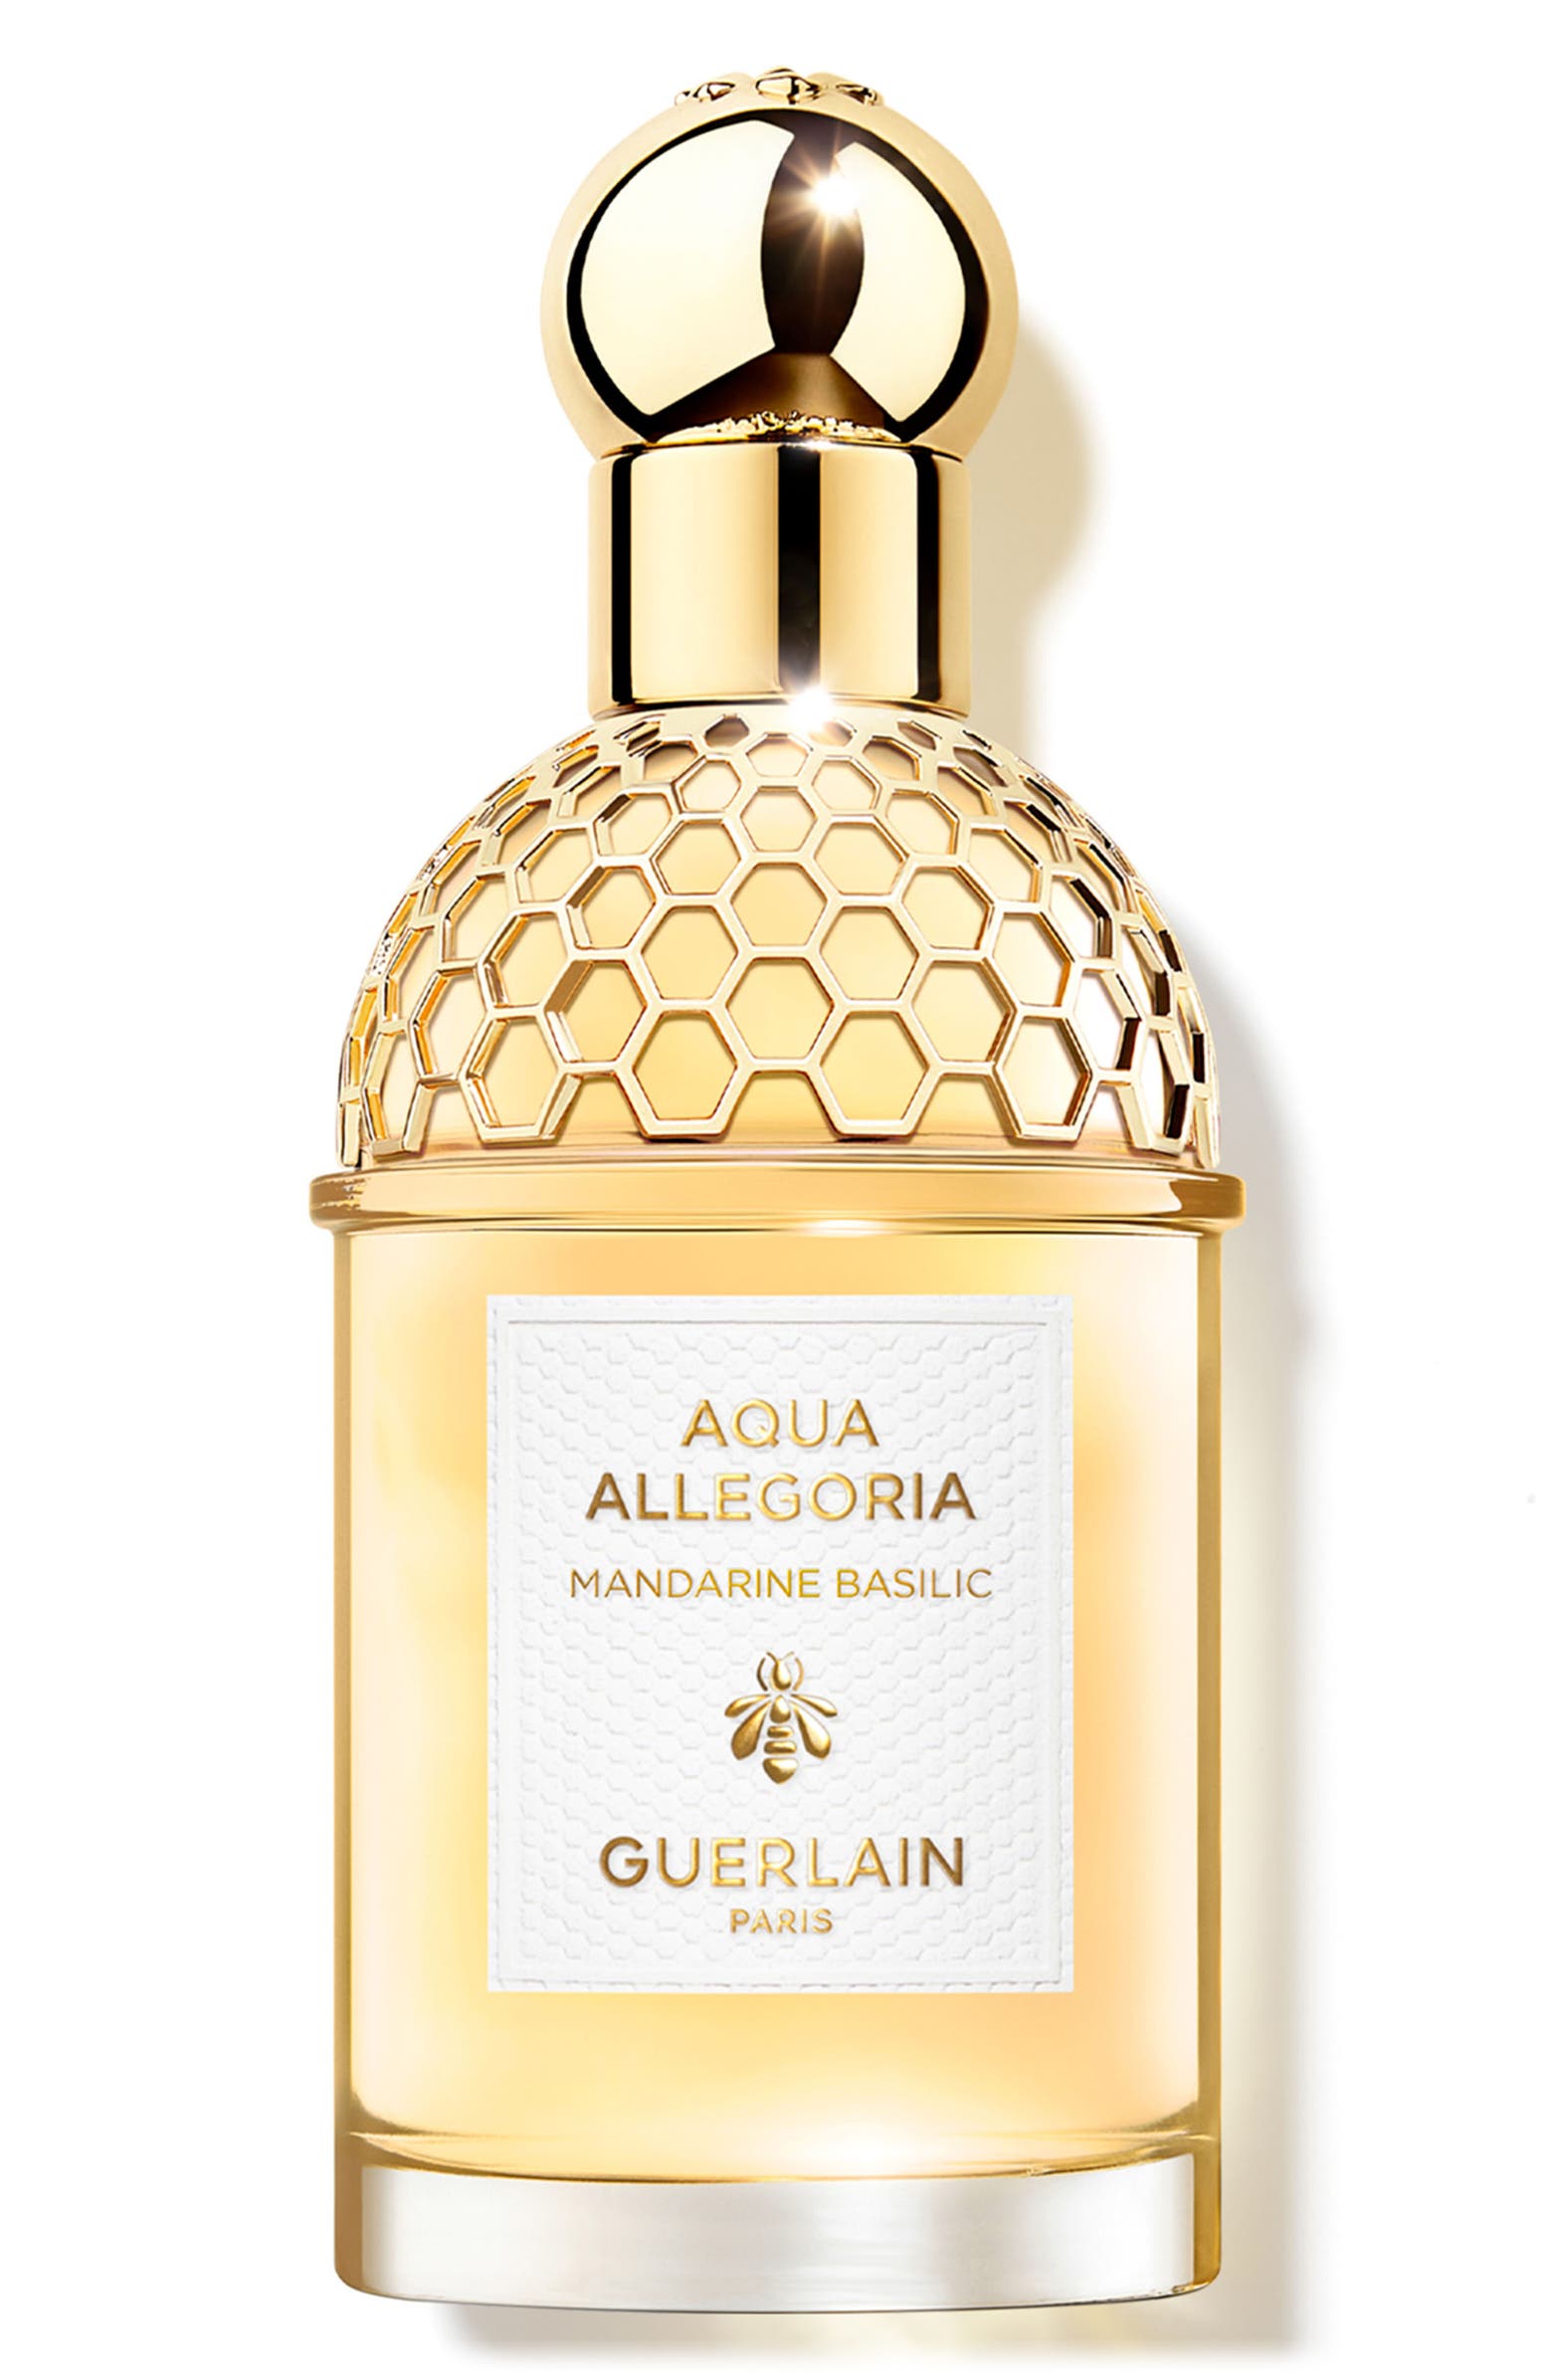 Guerlain Aqua Allergoria Mandarine basilic perfume